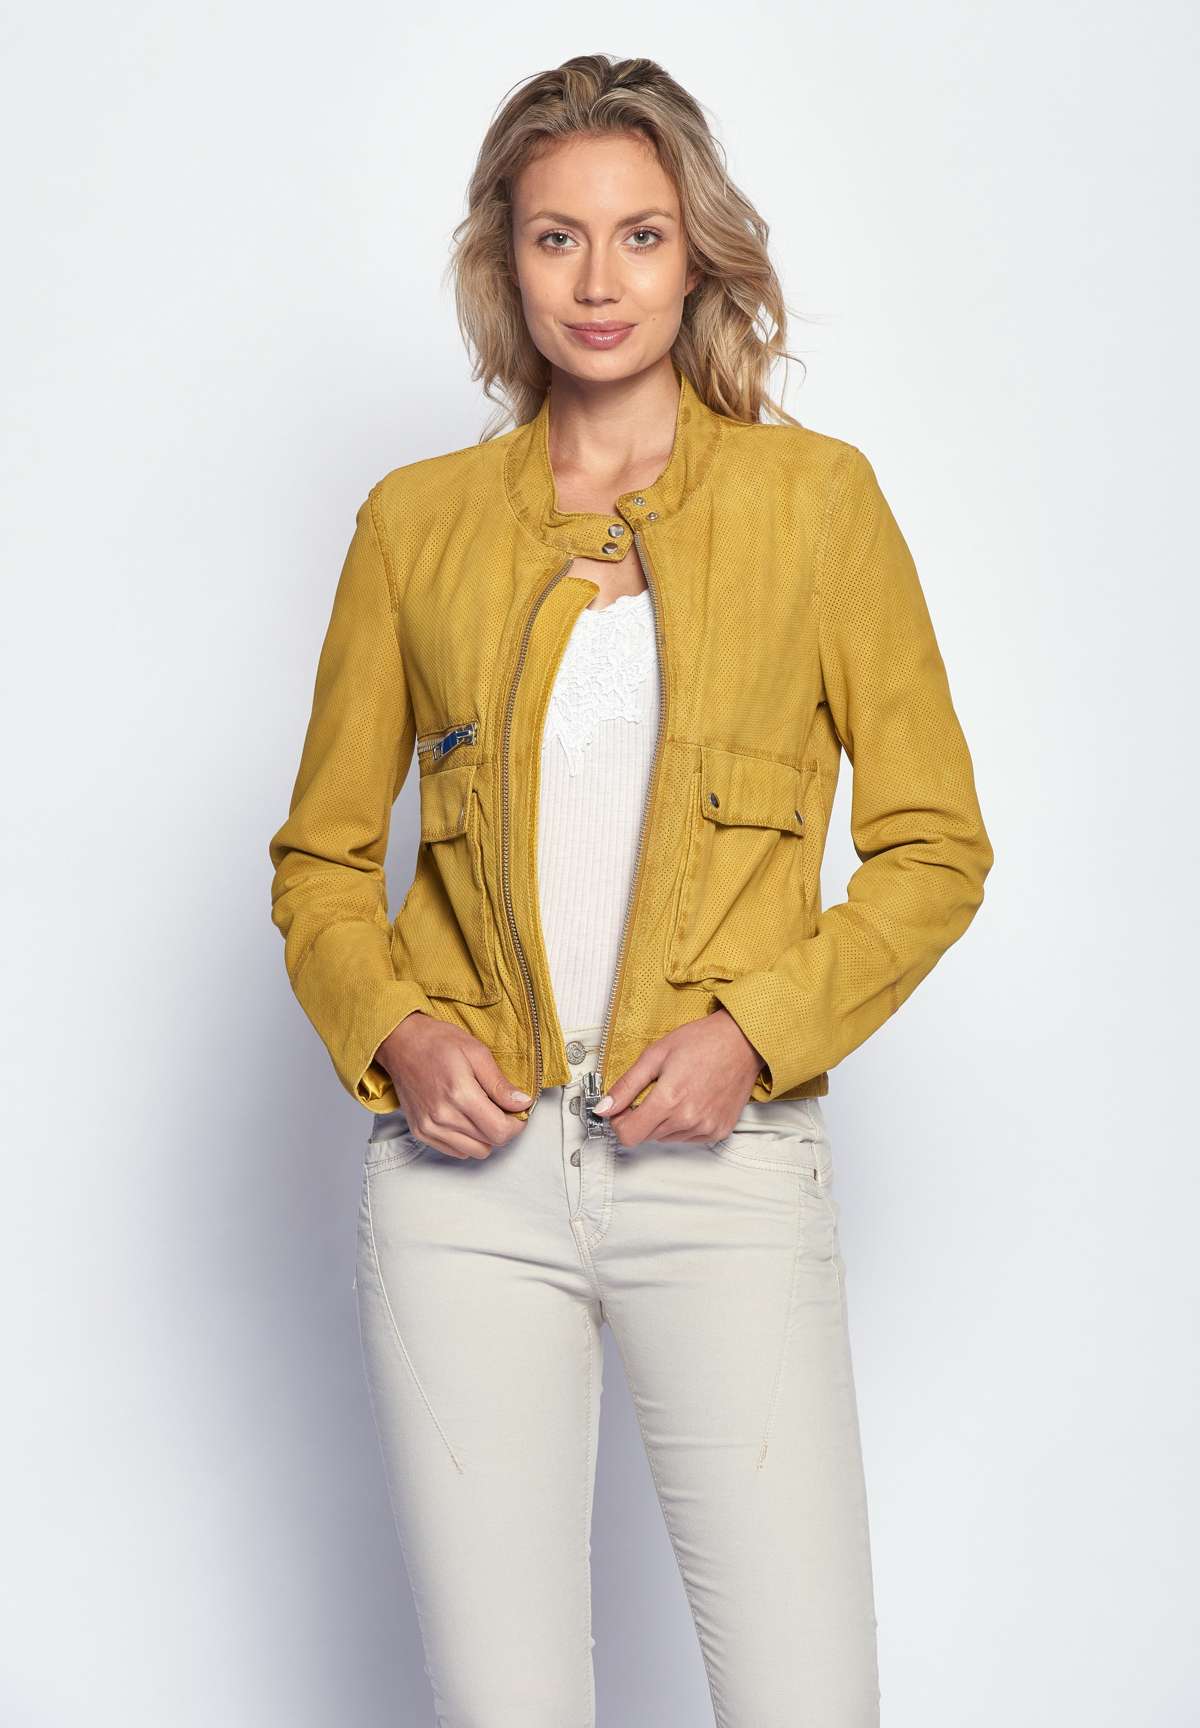 Кожаный пиджак желтый JOYLY.RU по MAZE одежды купить в России доставкой с цвет магазине